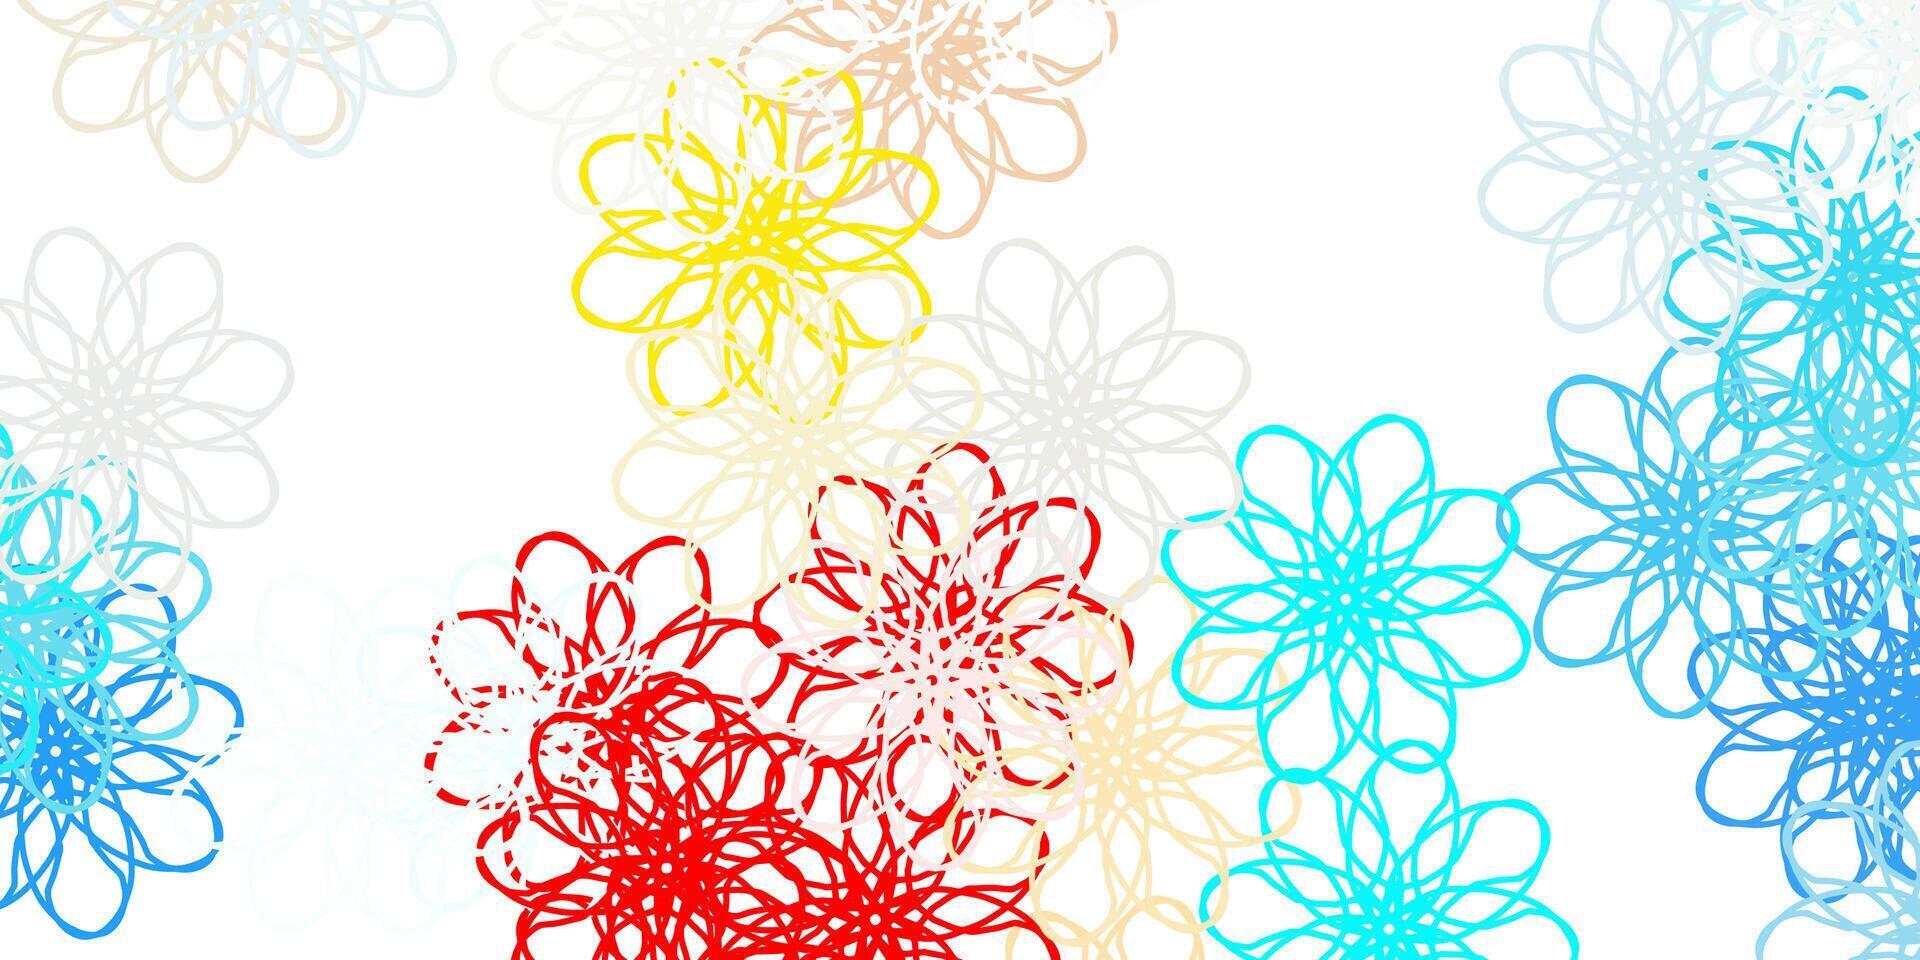 fundo de doodle de vetor azul e amarelo claro com flores.